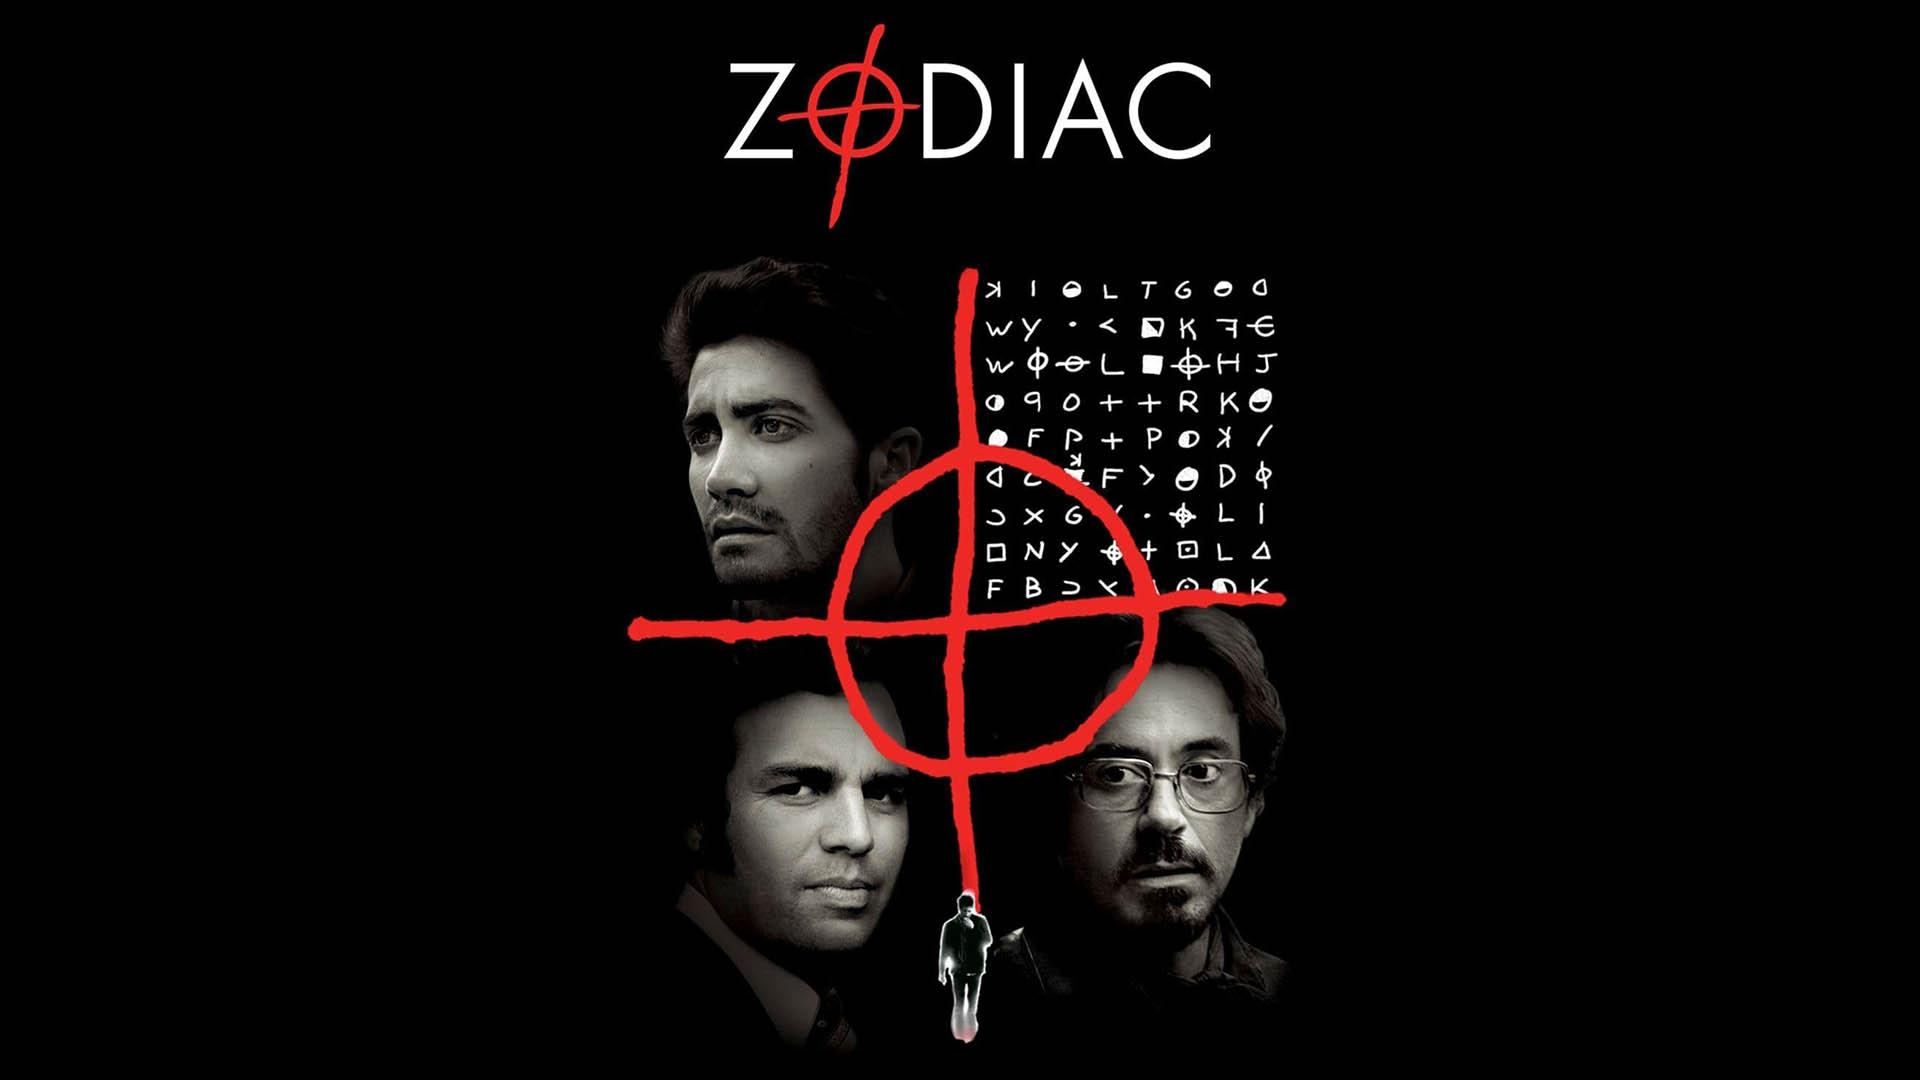 پوستر فیلم Zodiac با تصویری از پازل زودیاک و شخصیت‌های اصلی فیلم